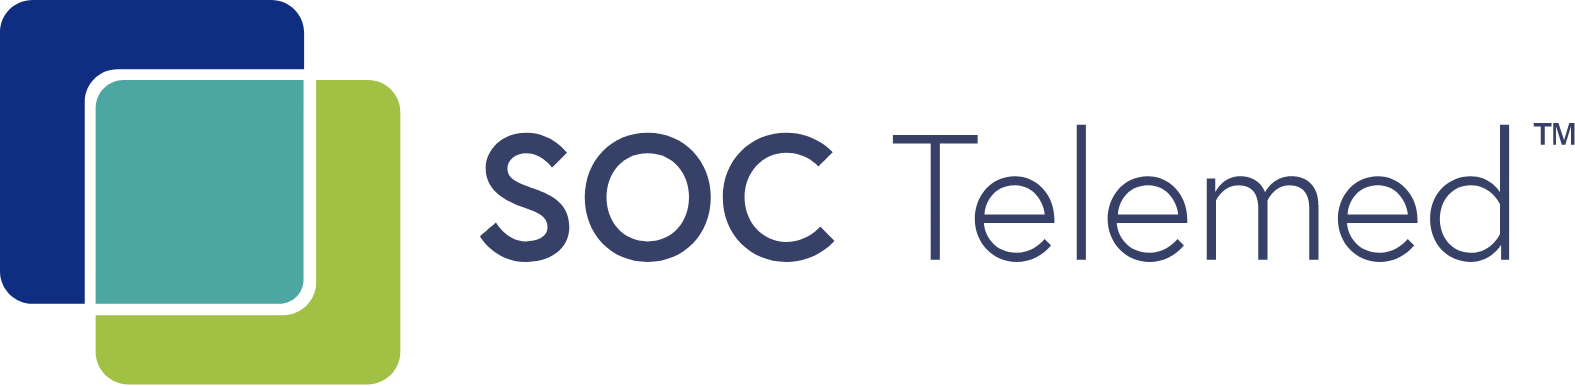 SOC Telemed logo large (transparent PNG)